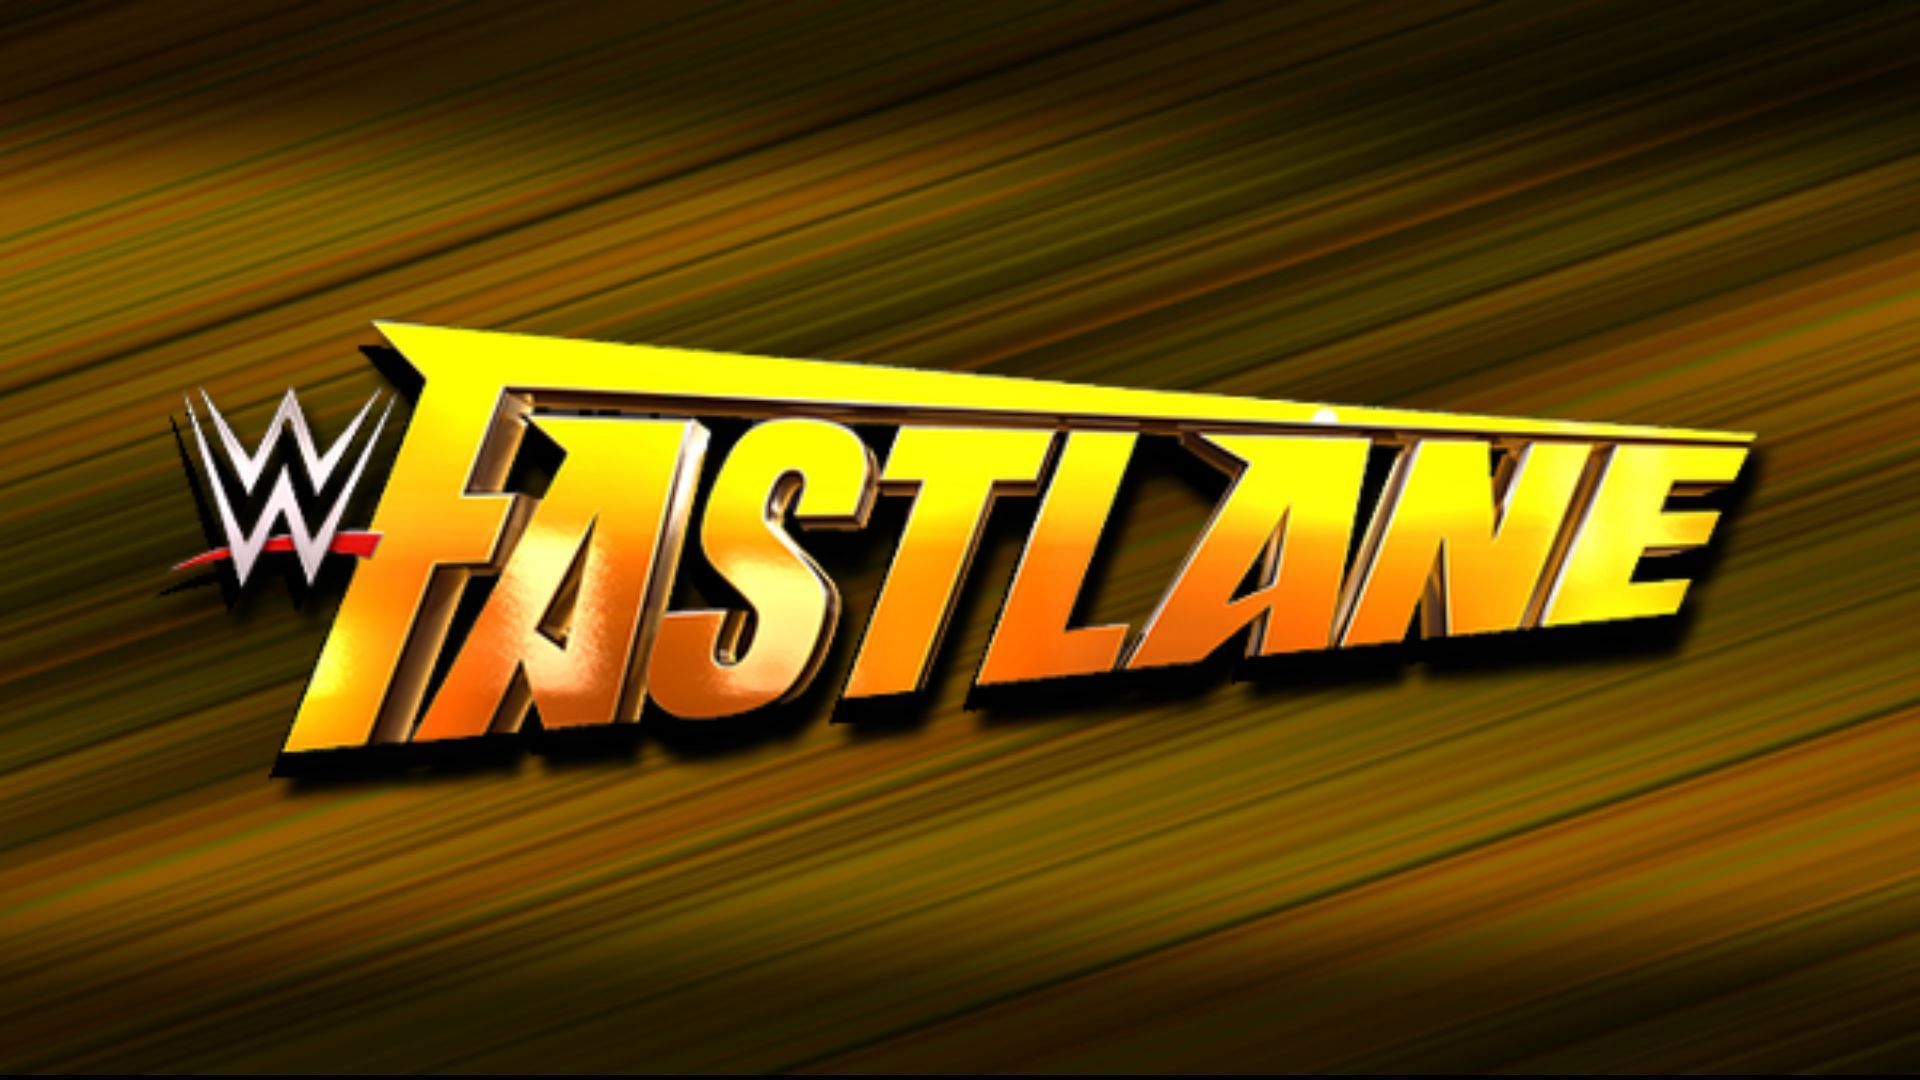 WWE Fastlane will air live next Saturday night!